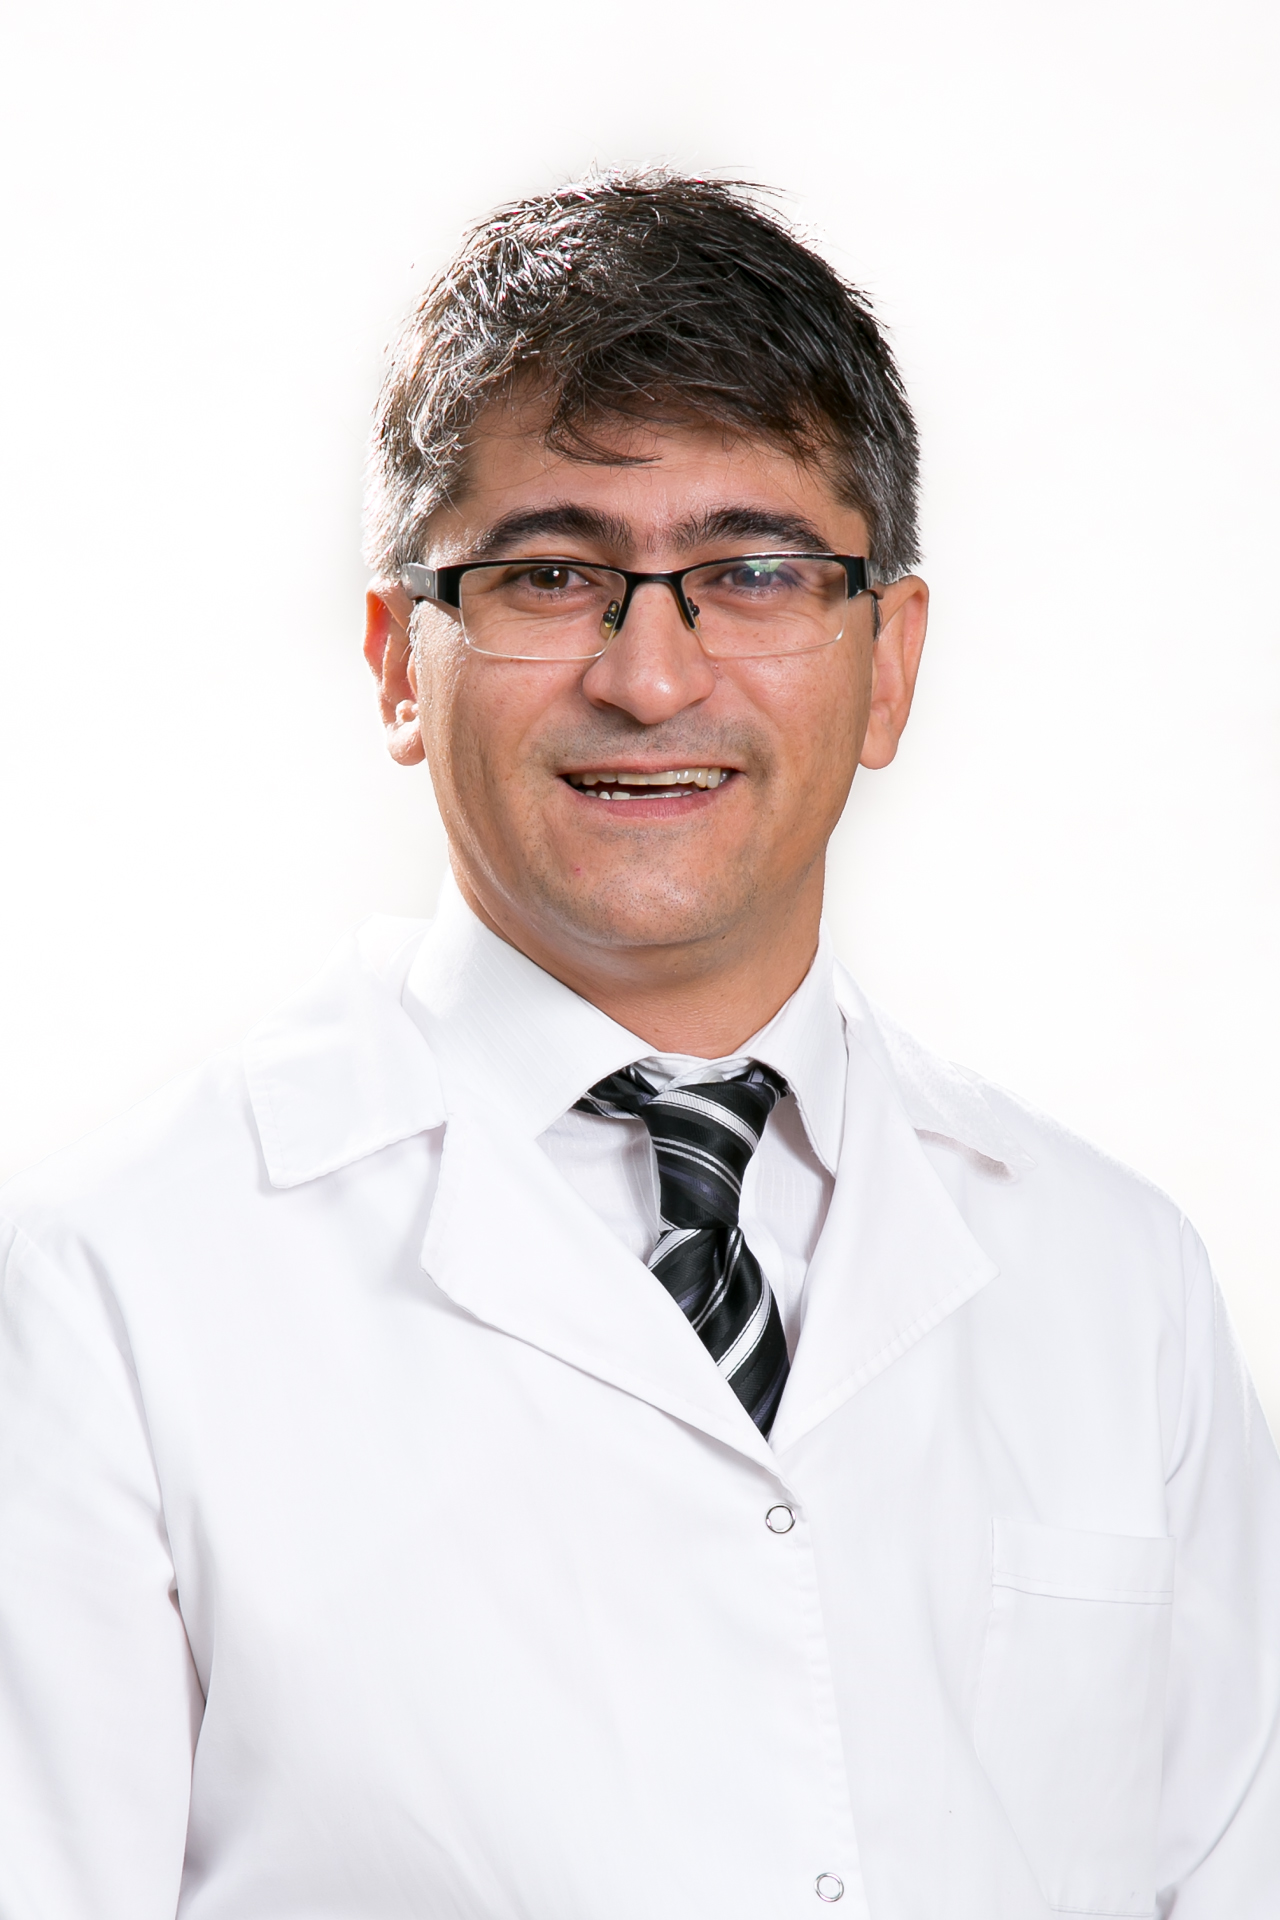 Dr. Zuchuat Diego